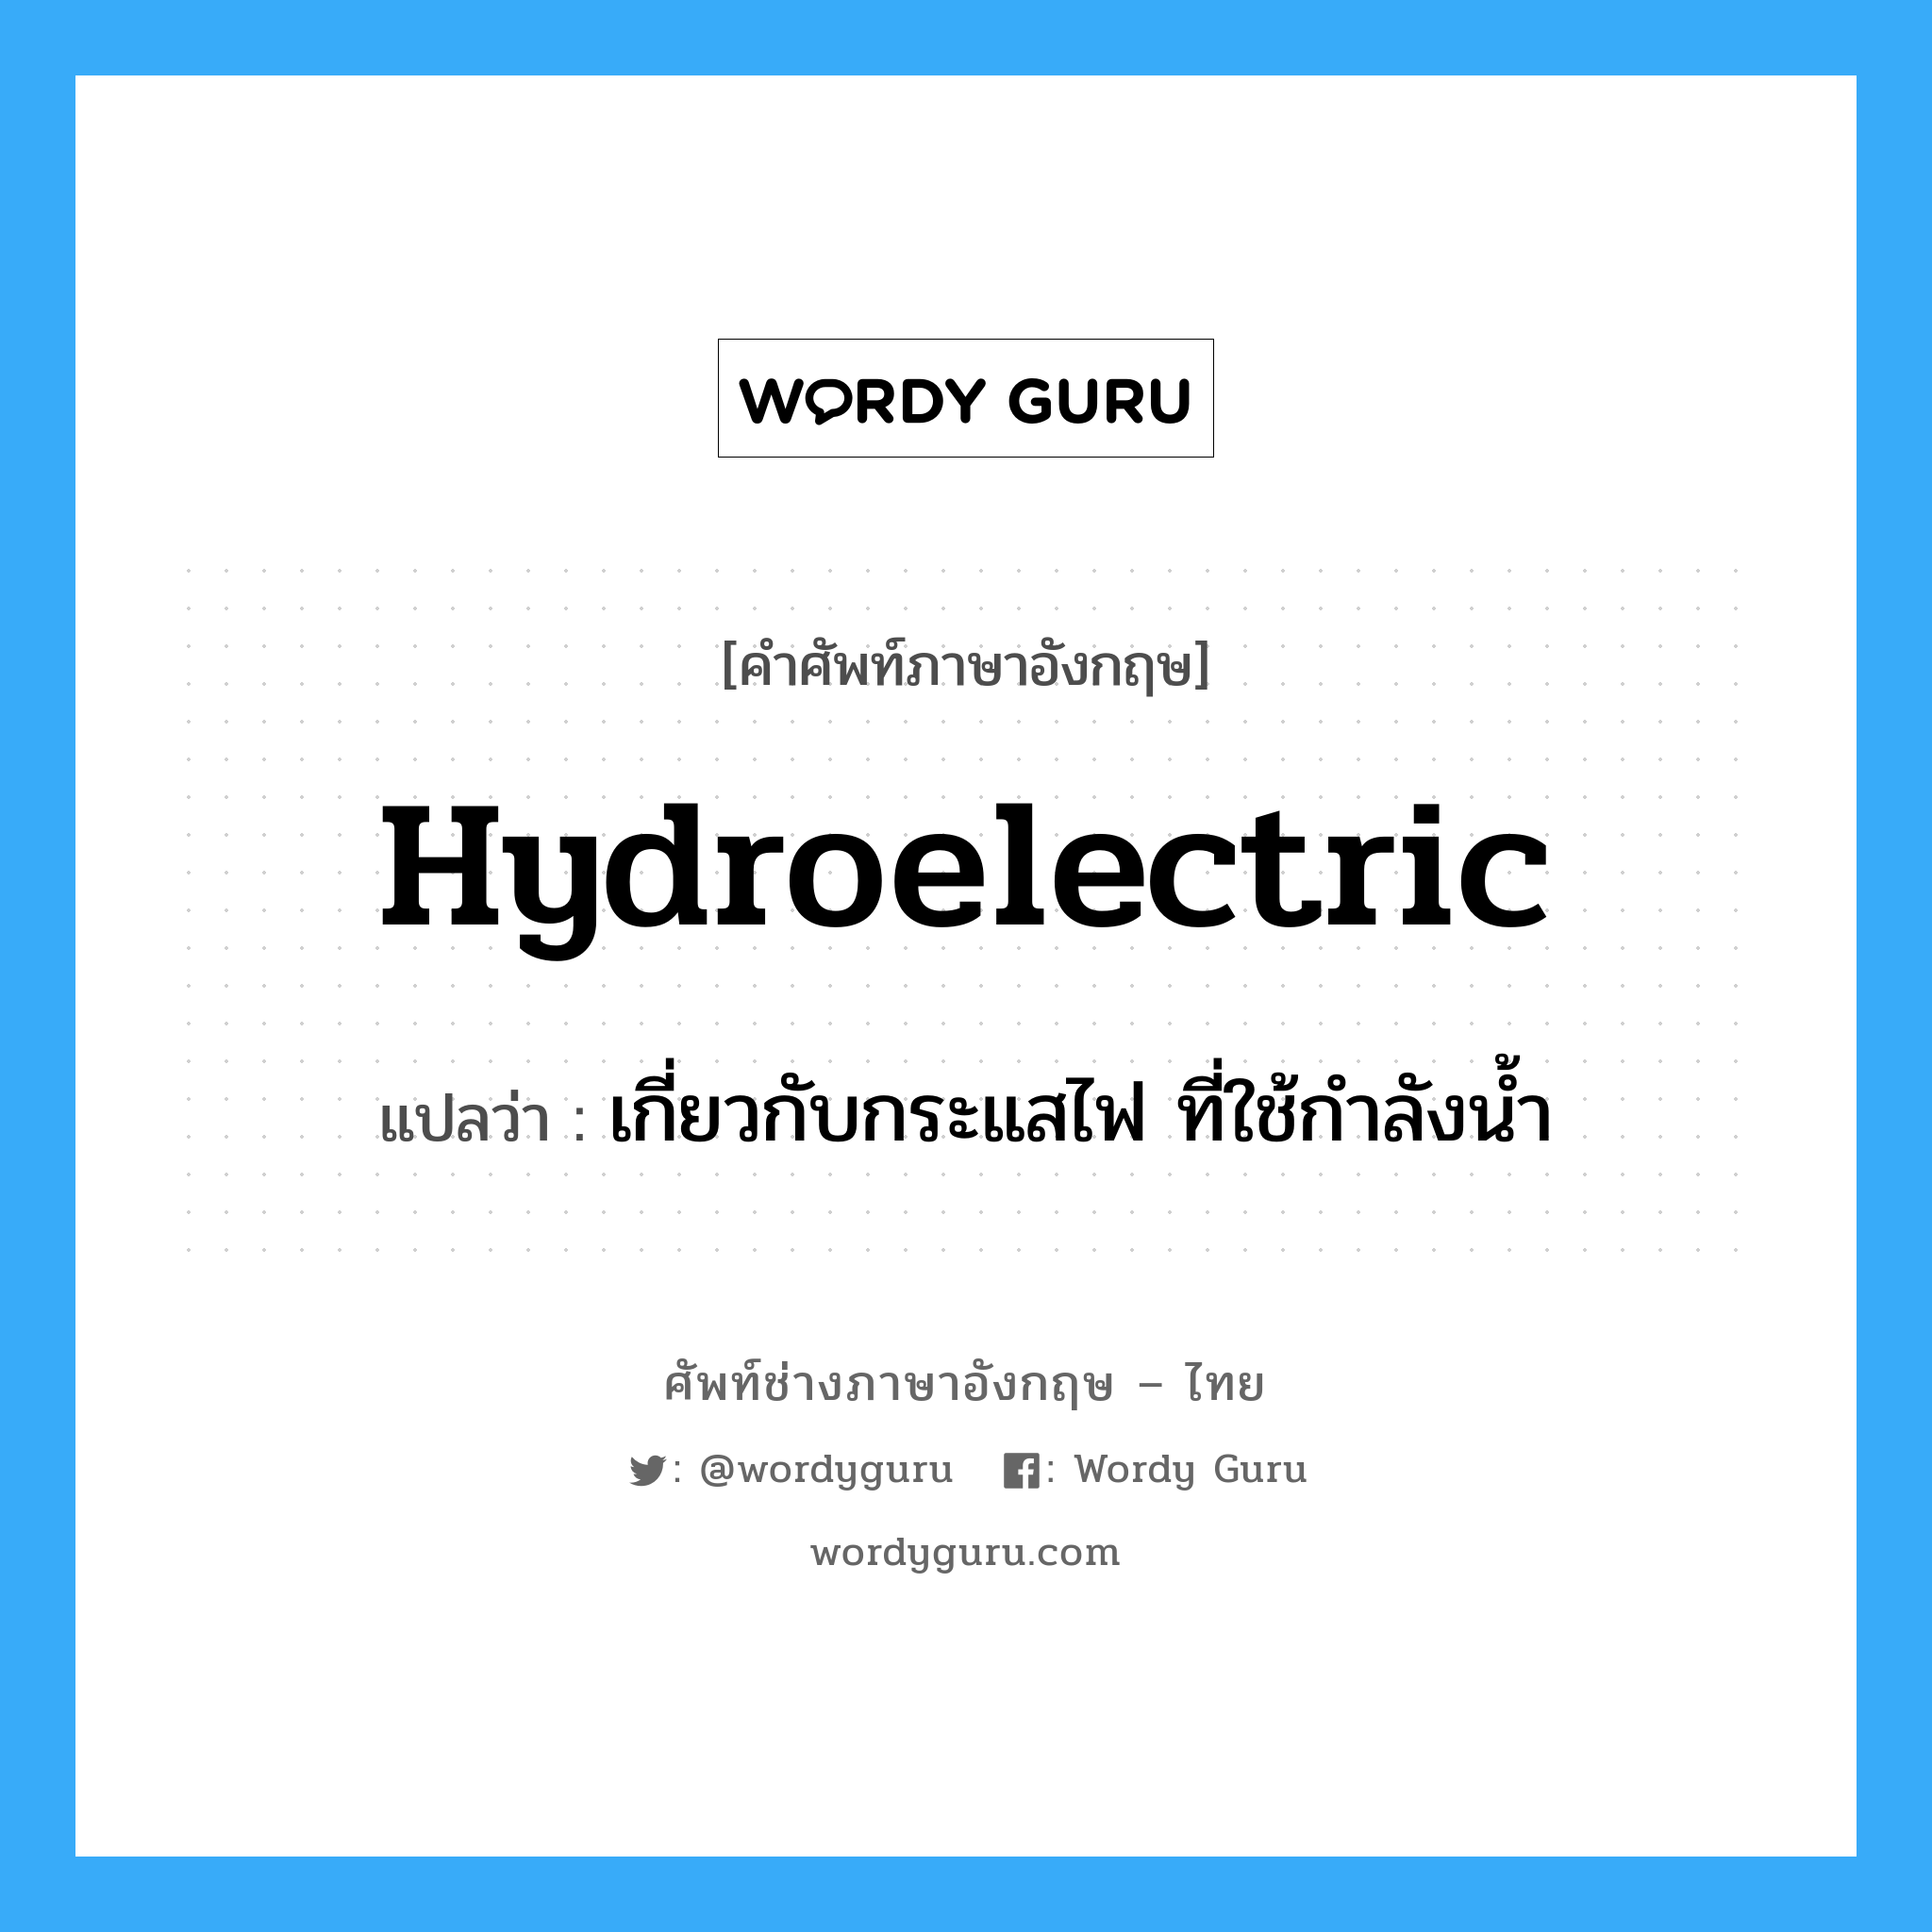 เกี่ยวกับกระแสไฟ ที่ใช้กำลังน้ำ ภาษาอังกฤษ?, คำศัพท์ช่างภาษาอังกฤษ - ไทย เกี่ยวกับกระแสไฟ ที่ใช้กำลังน้ำ คำศัพท์ภาษาอังกฤษ เกี่ยวกับกระแสไฟ ที่ใช้กำลังน้ำ แปลว่า hydroelectric